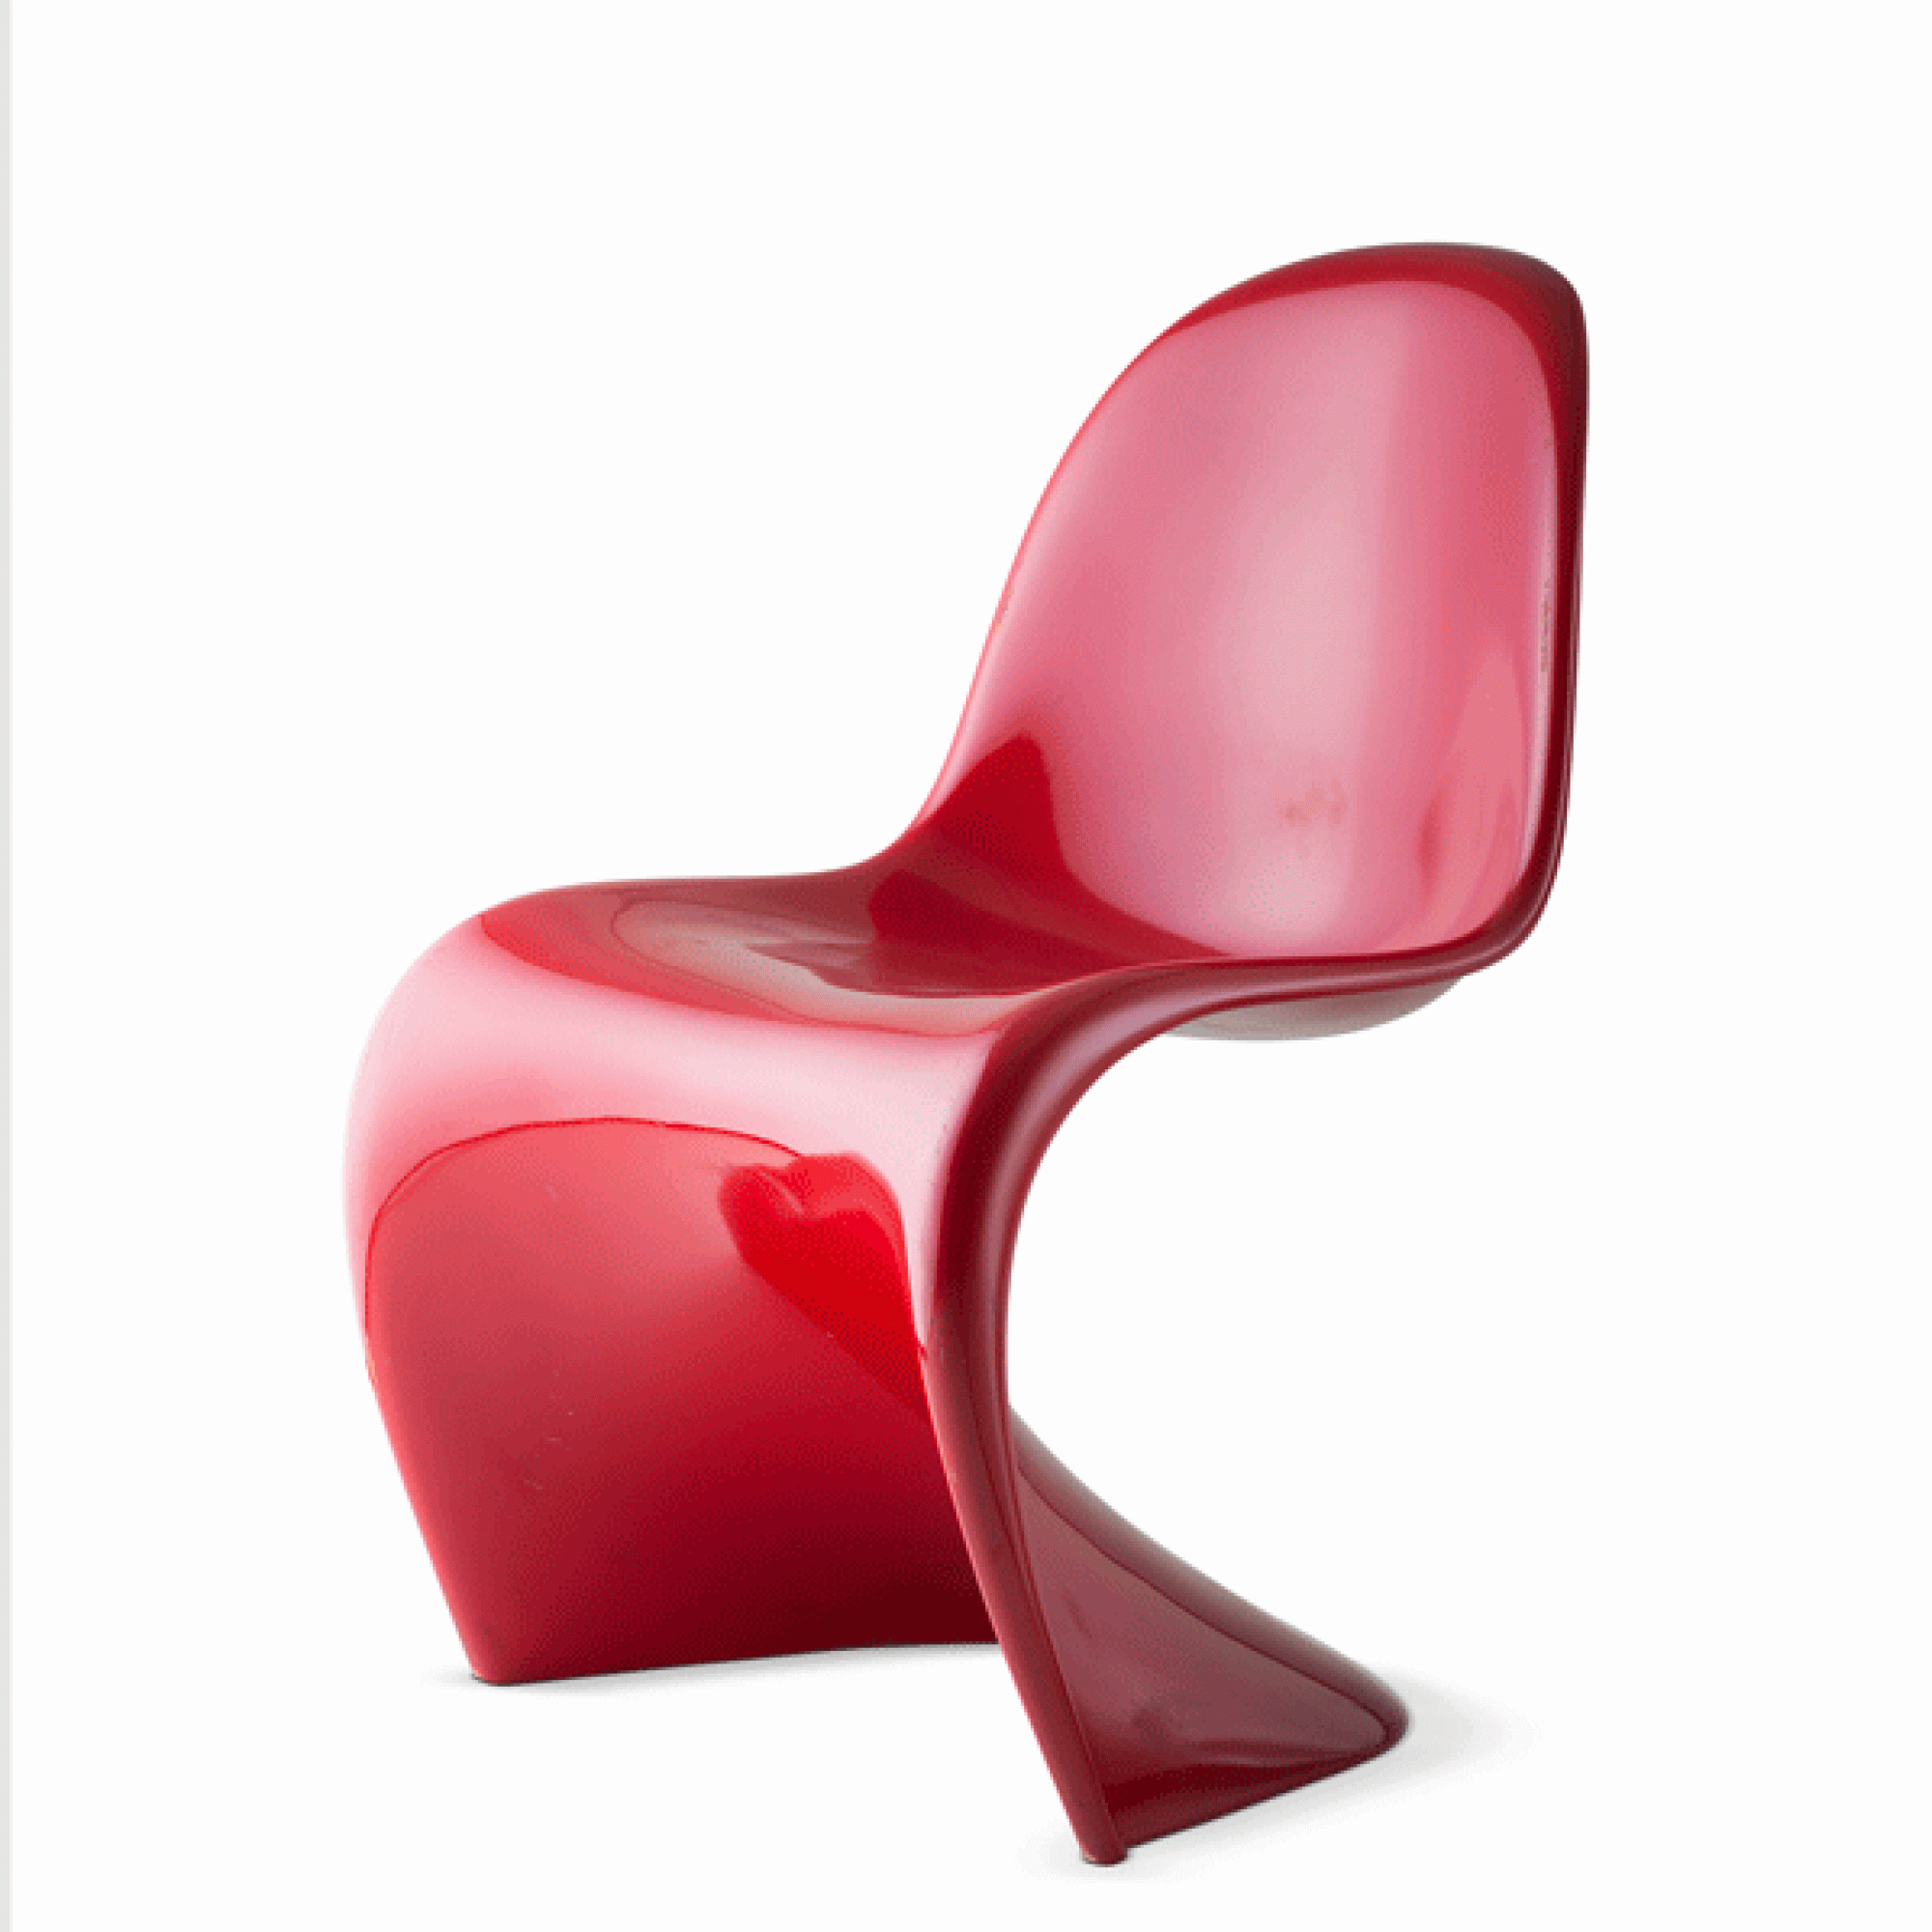 Eine Design-Ikone: der Panton Chair von Verner Panton aus den Jahren 1956 bis 1968...  (Jürgen Hans / Vitra Design Museum)